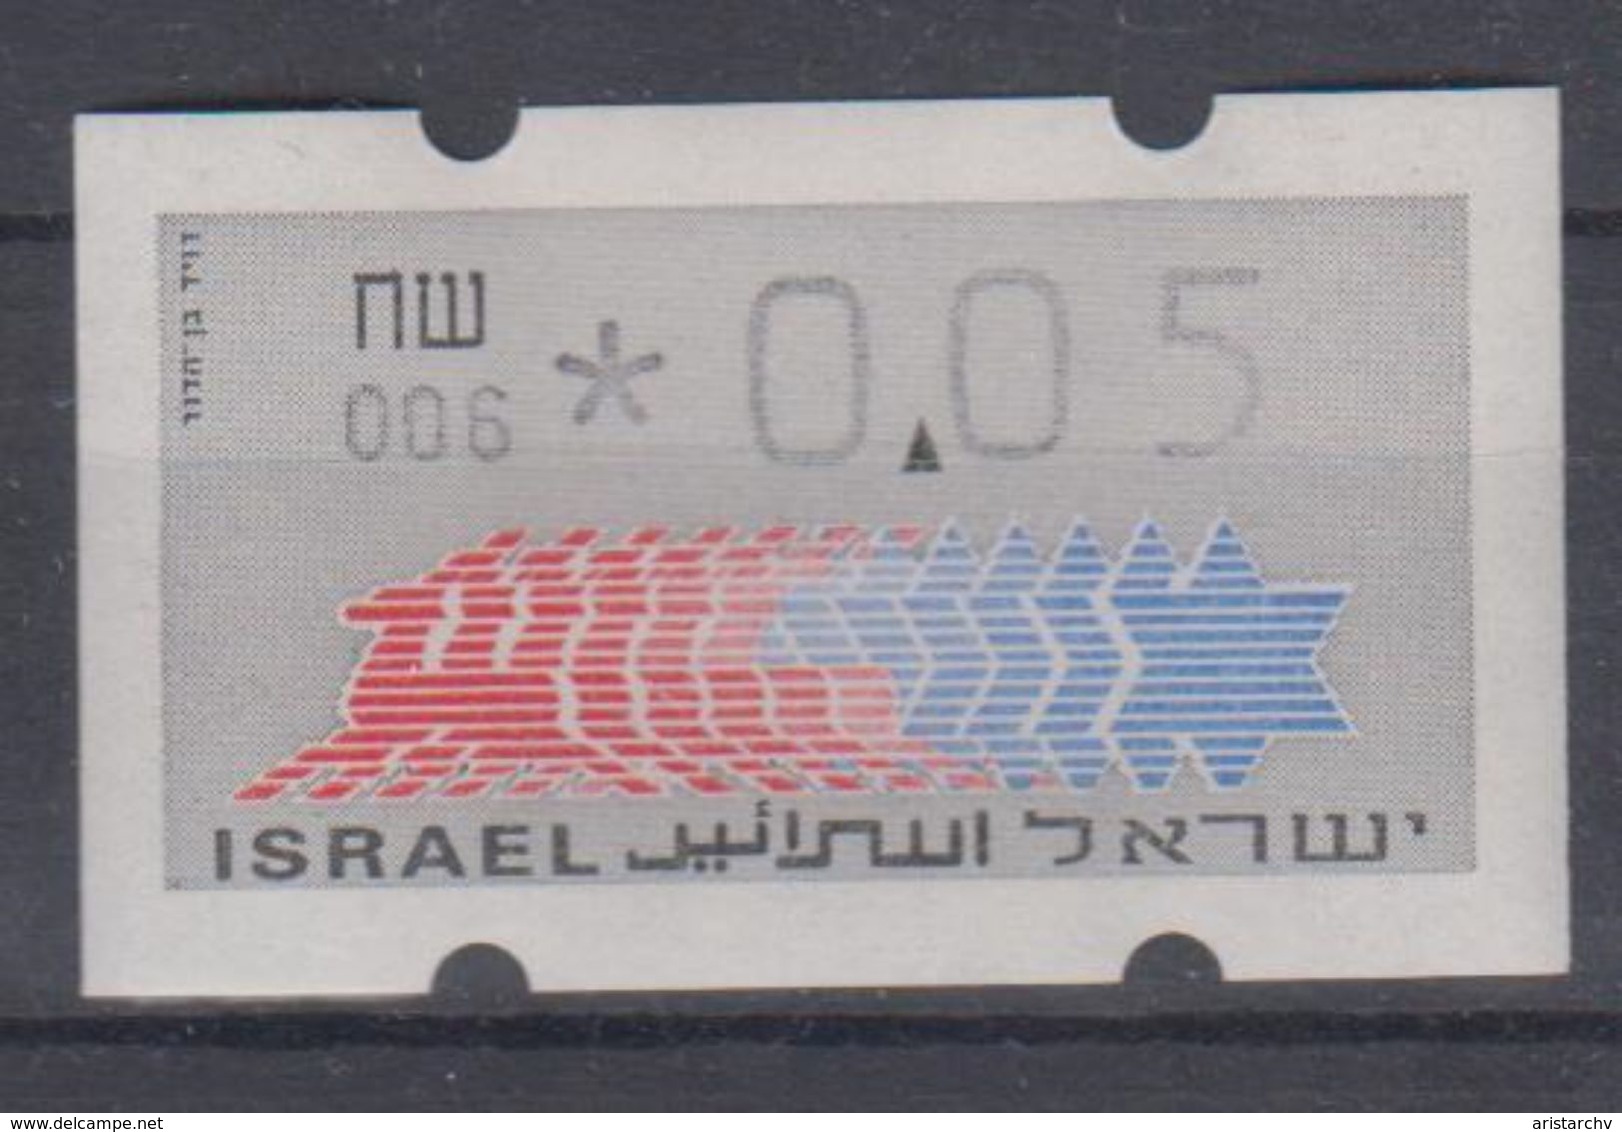 ISRAEL 1988 KLUSSENDORF ATM 0.05 SHEKELS 2 DIFFERENT KINDS OF PAPER NUMBER 006 - Franking Labels